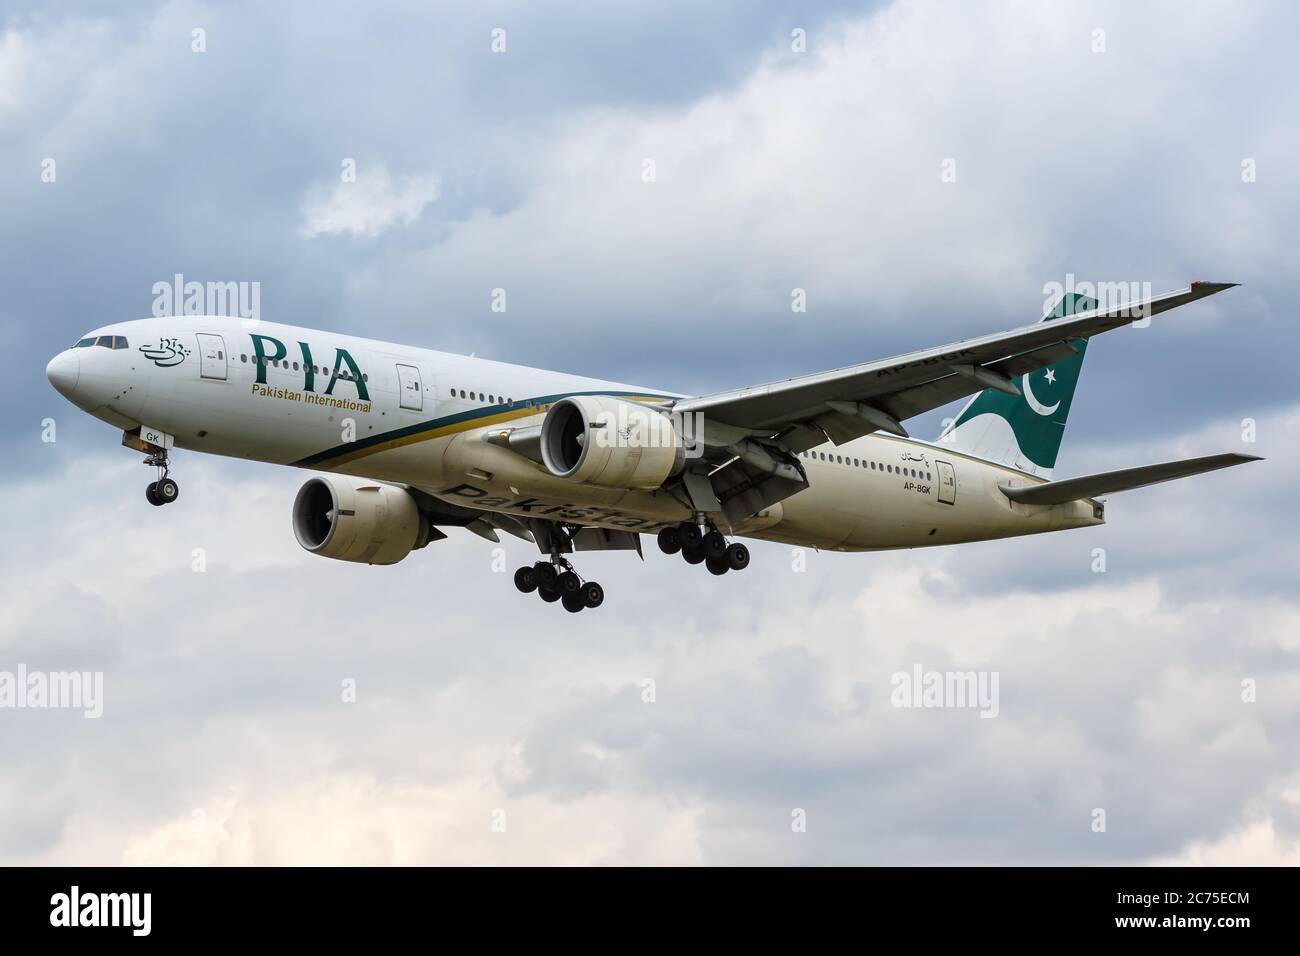 Londres, Royaume-Uni - 10 juillet 2019 : PIA Pakistan International Boeing 777-200ER avion London Heathrow Airport (LHR) au Royaume-Uni. Banque D'Images